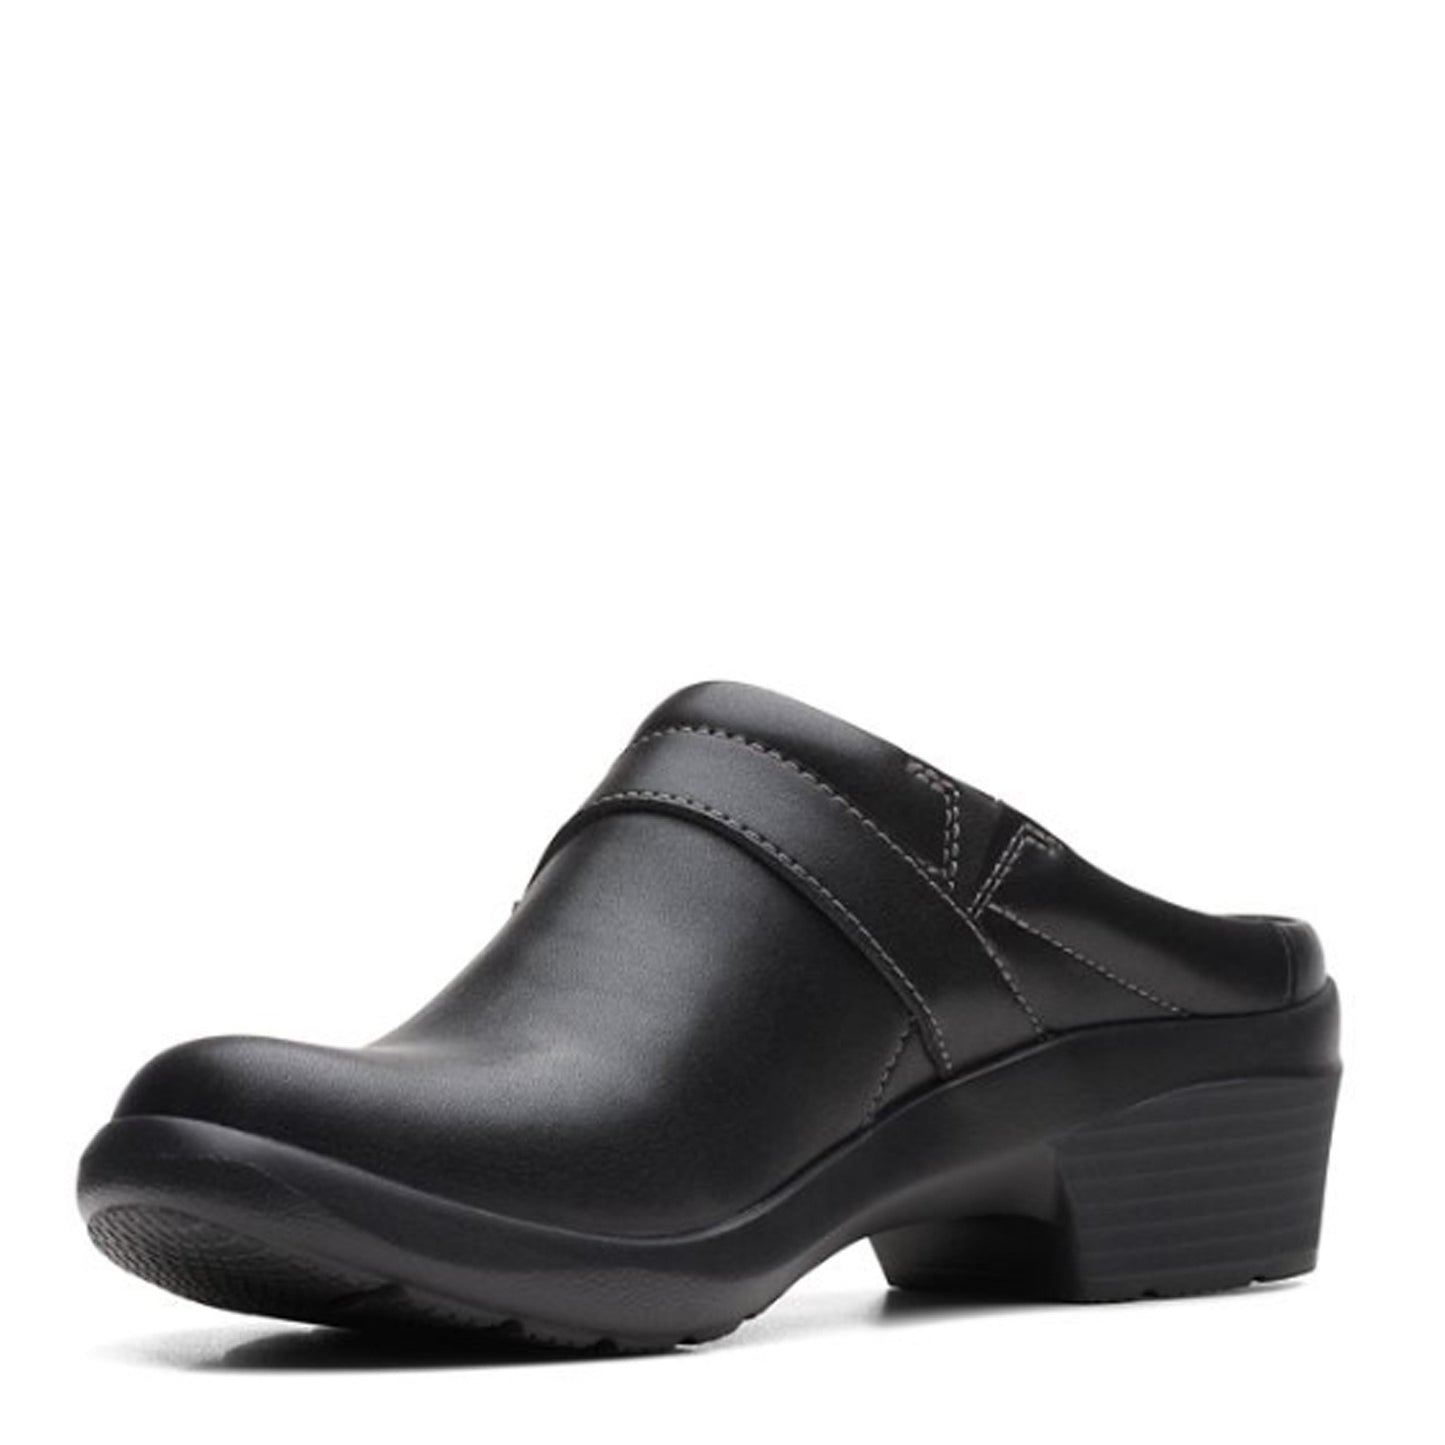 Peltz Shoes  Women's Clarks Angie Mist Clog BLACK 26167638